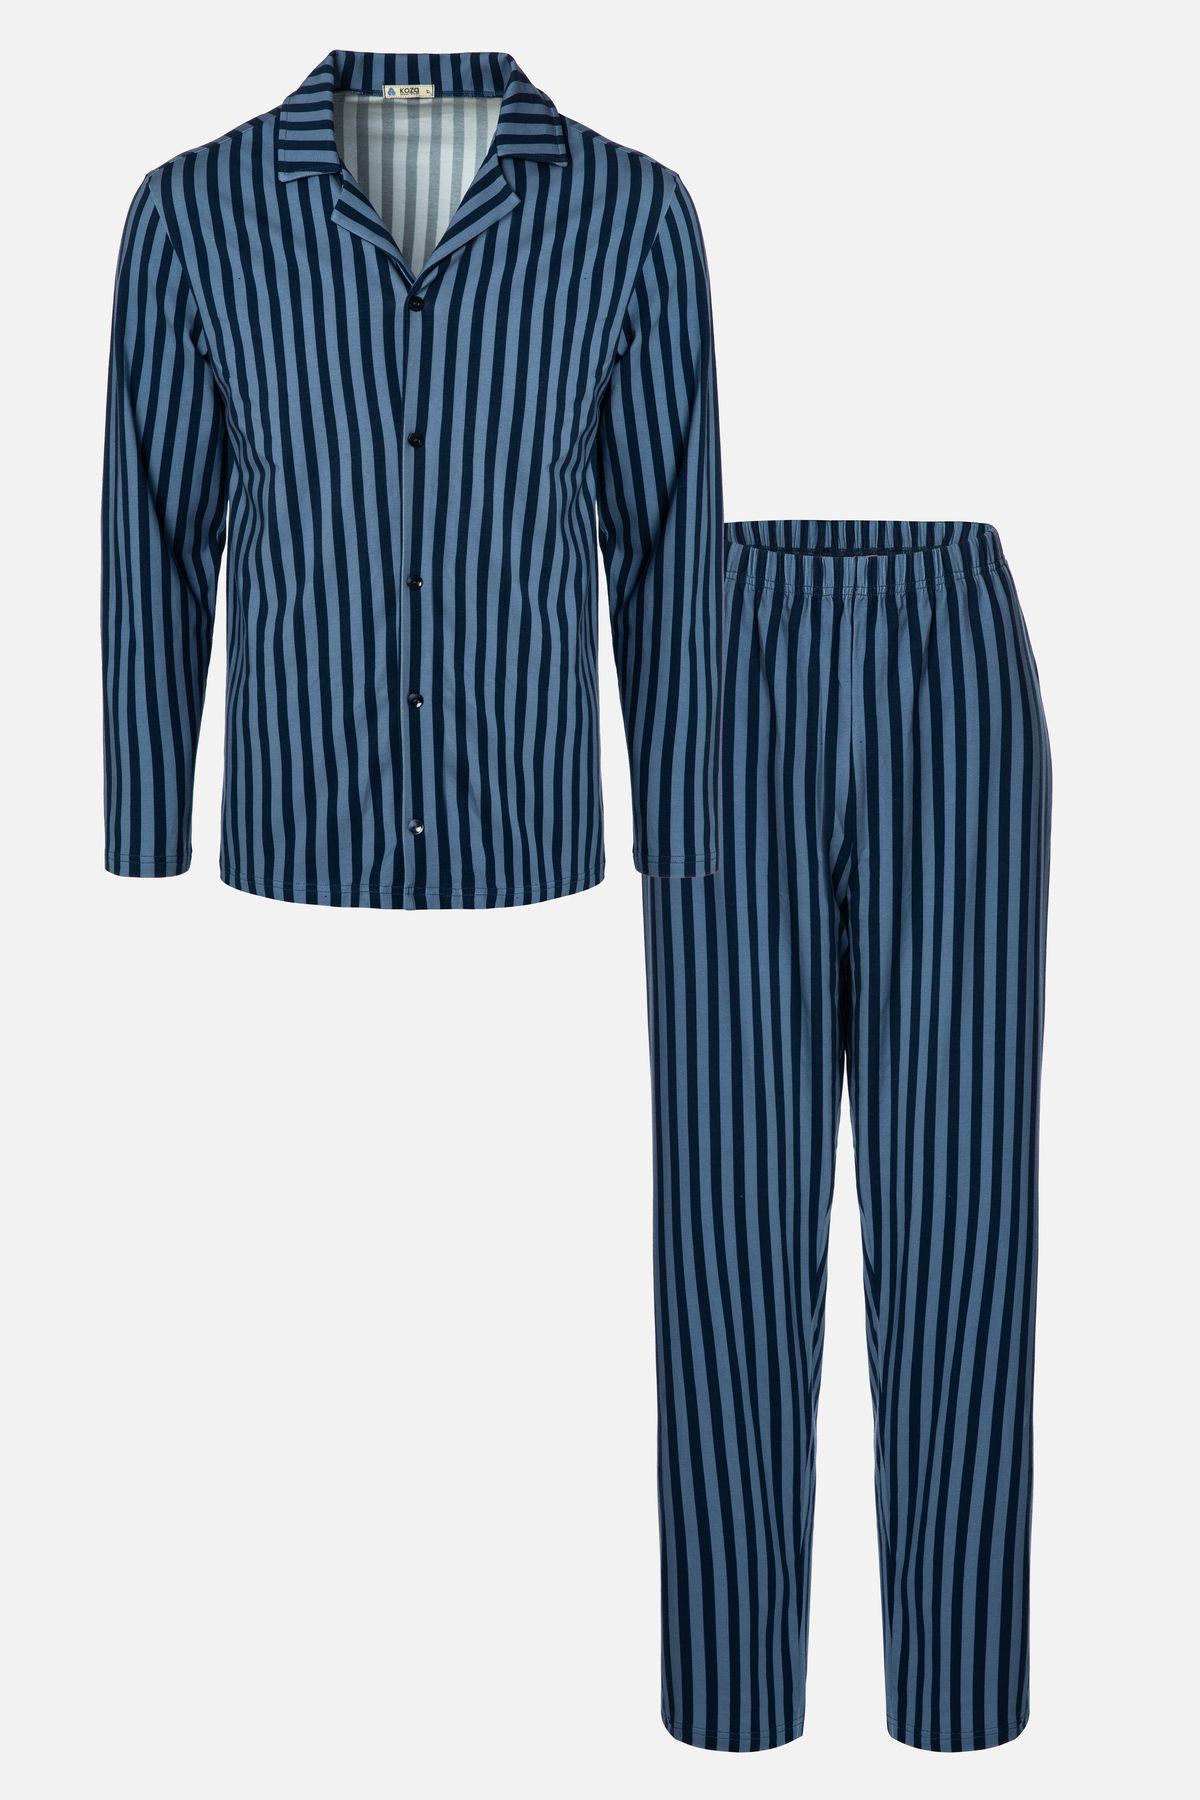 koza iç giyim Erkek Mavi Çizgili Pamuklu Kombinli Gömlek Yaka Pijama Takımı